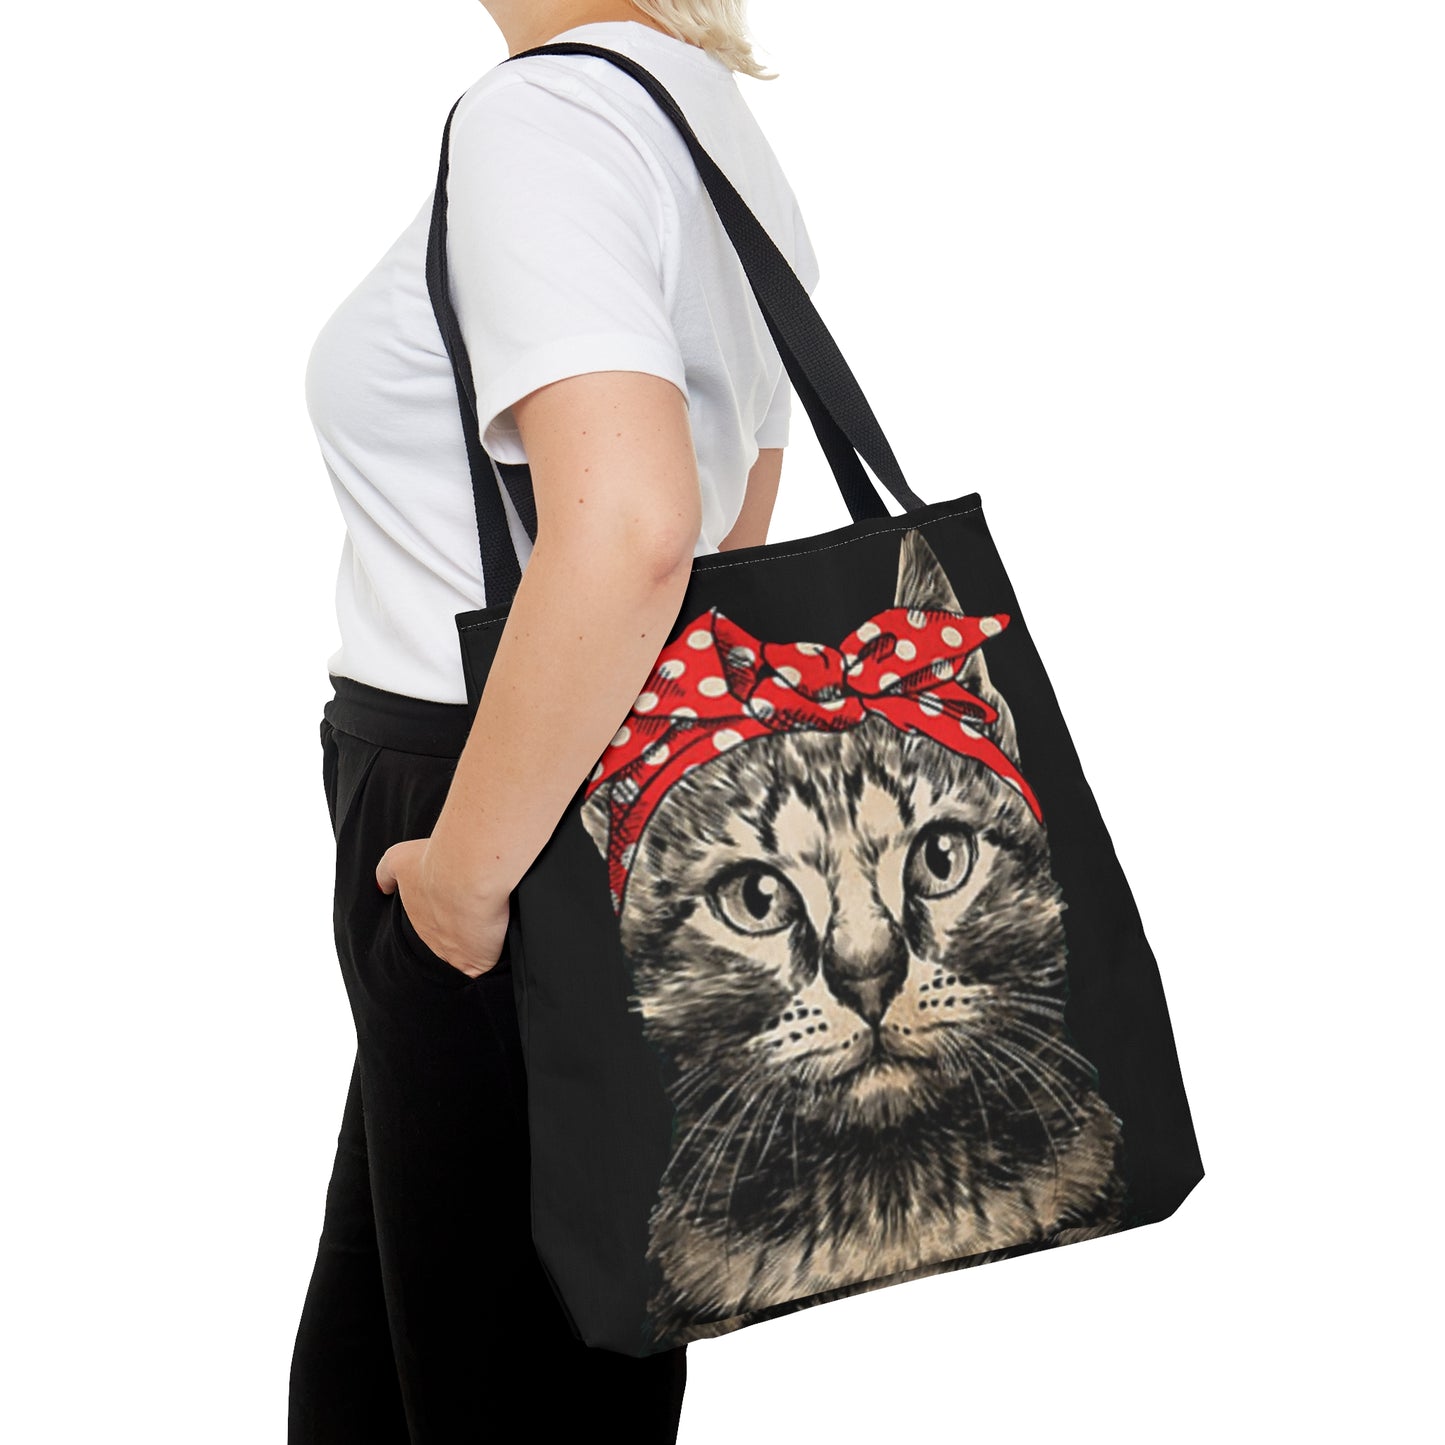 Tote Bag - Cat Lady Design